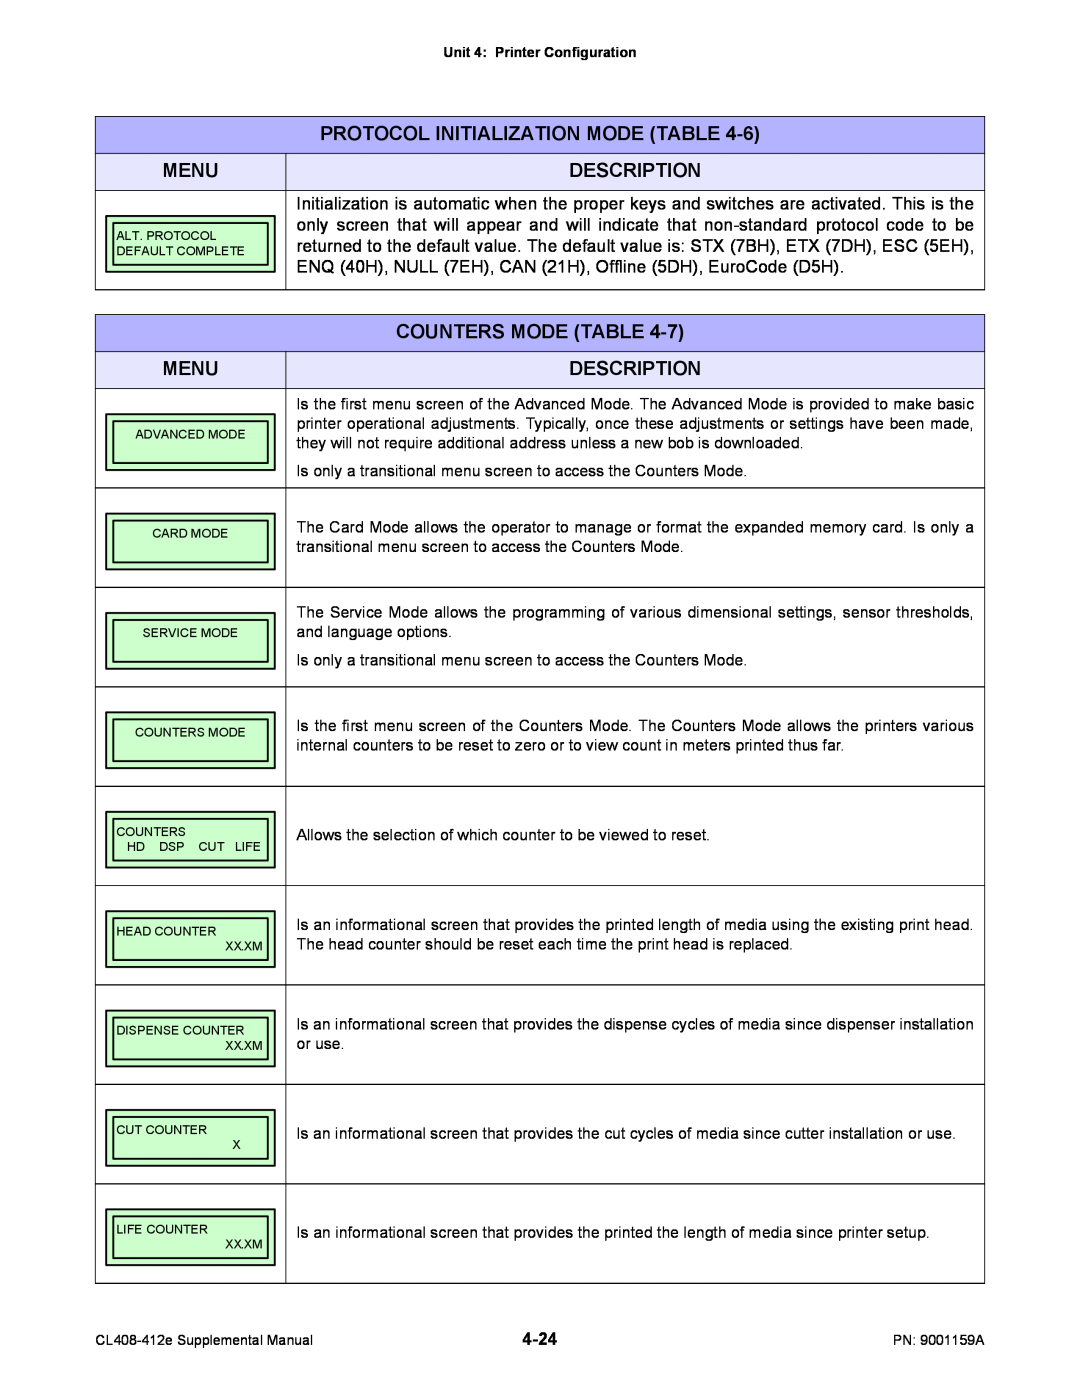 SATO CL408-412e manual Description, Protocol Initialization Mode Table, Menu, Counters Mode Table 